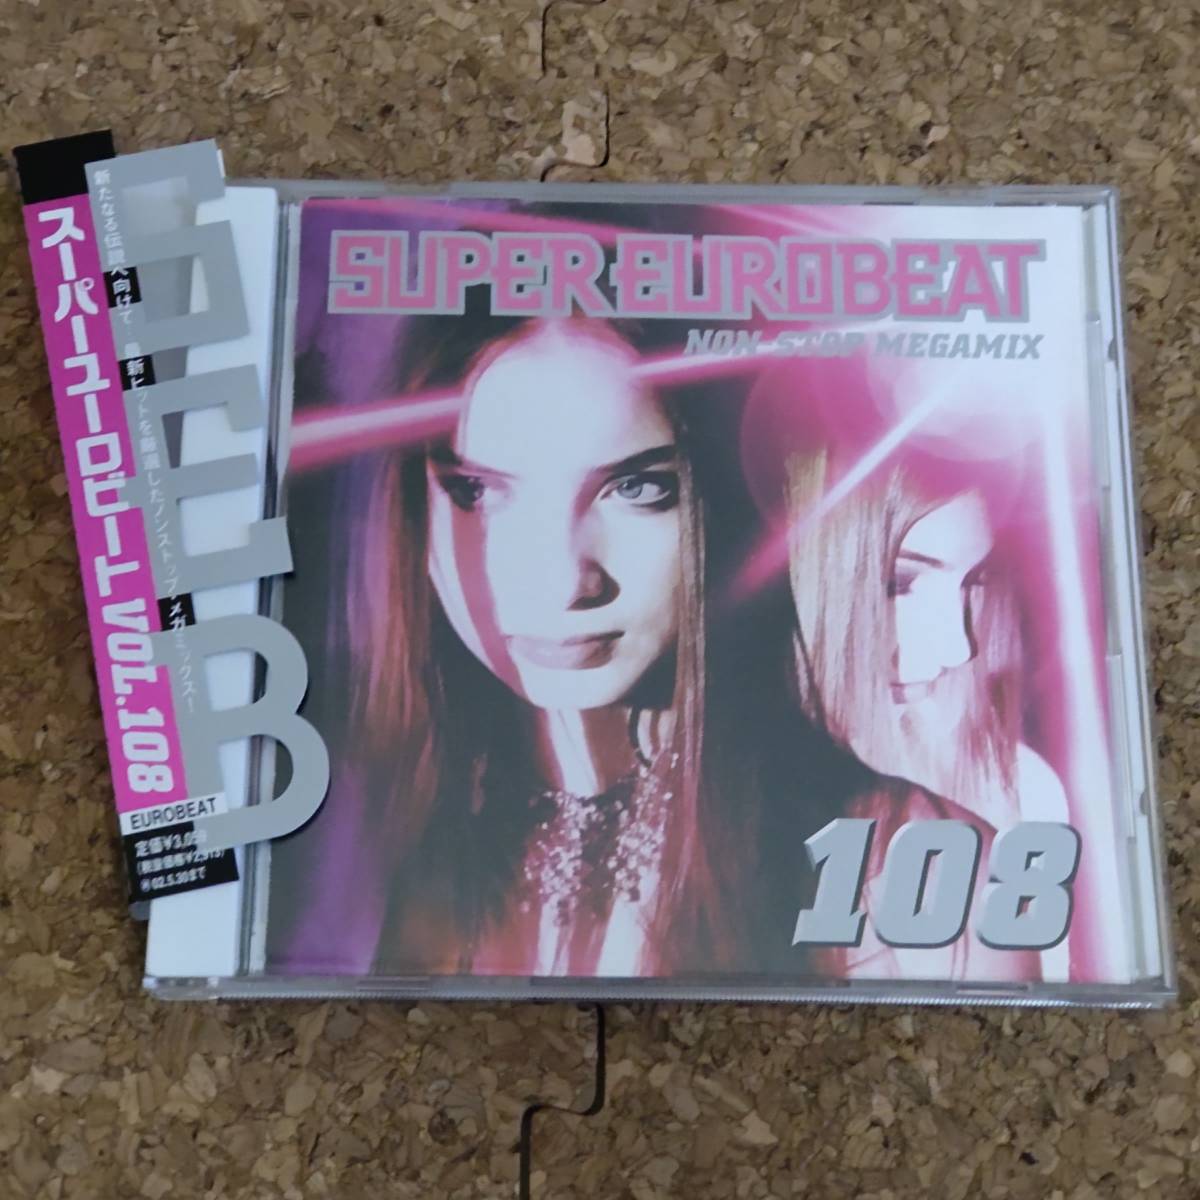 .|CD с лентой super euro beat /Super Eurobeat Vol.108 Non-Stop Megamix 2000 год [AVCD-10108]